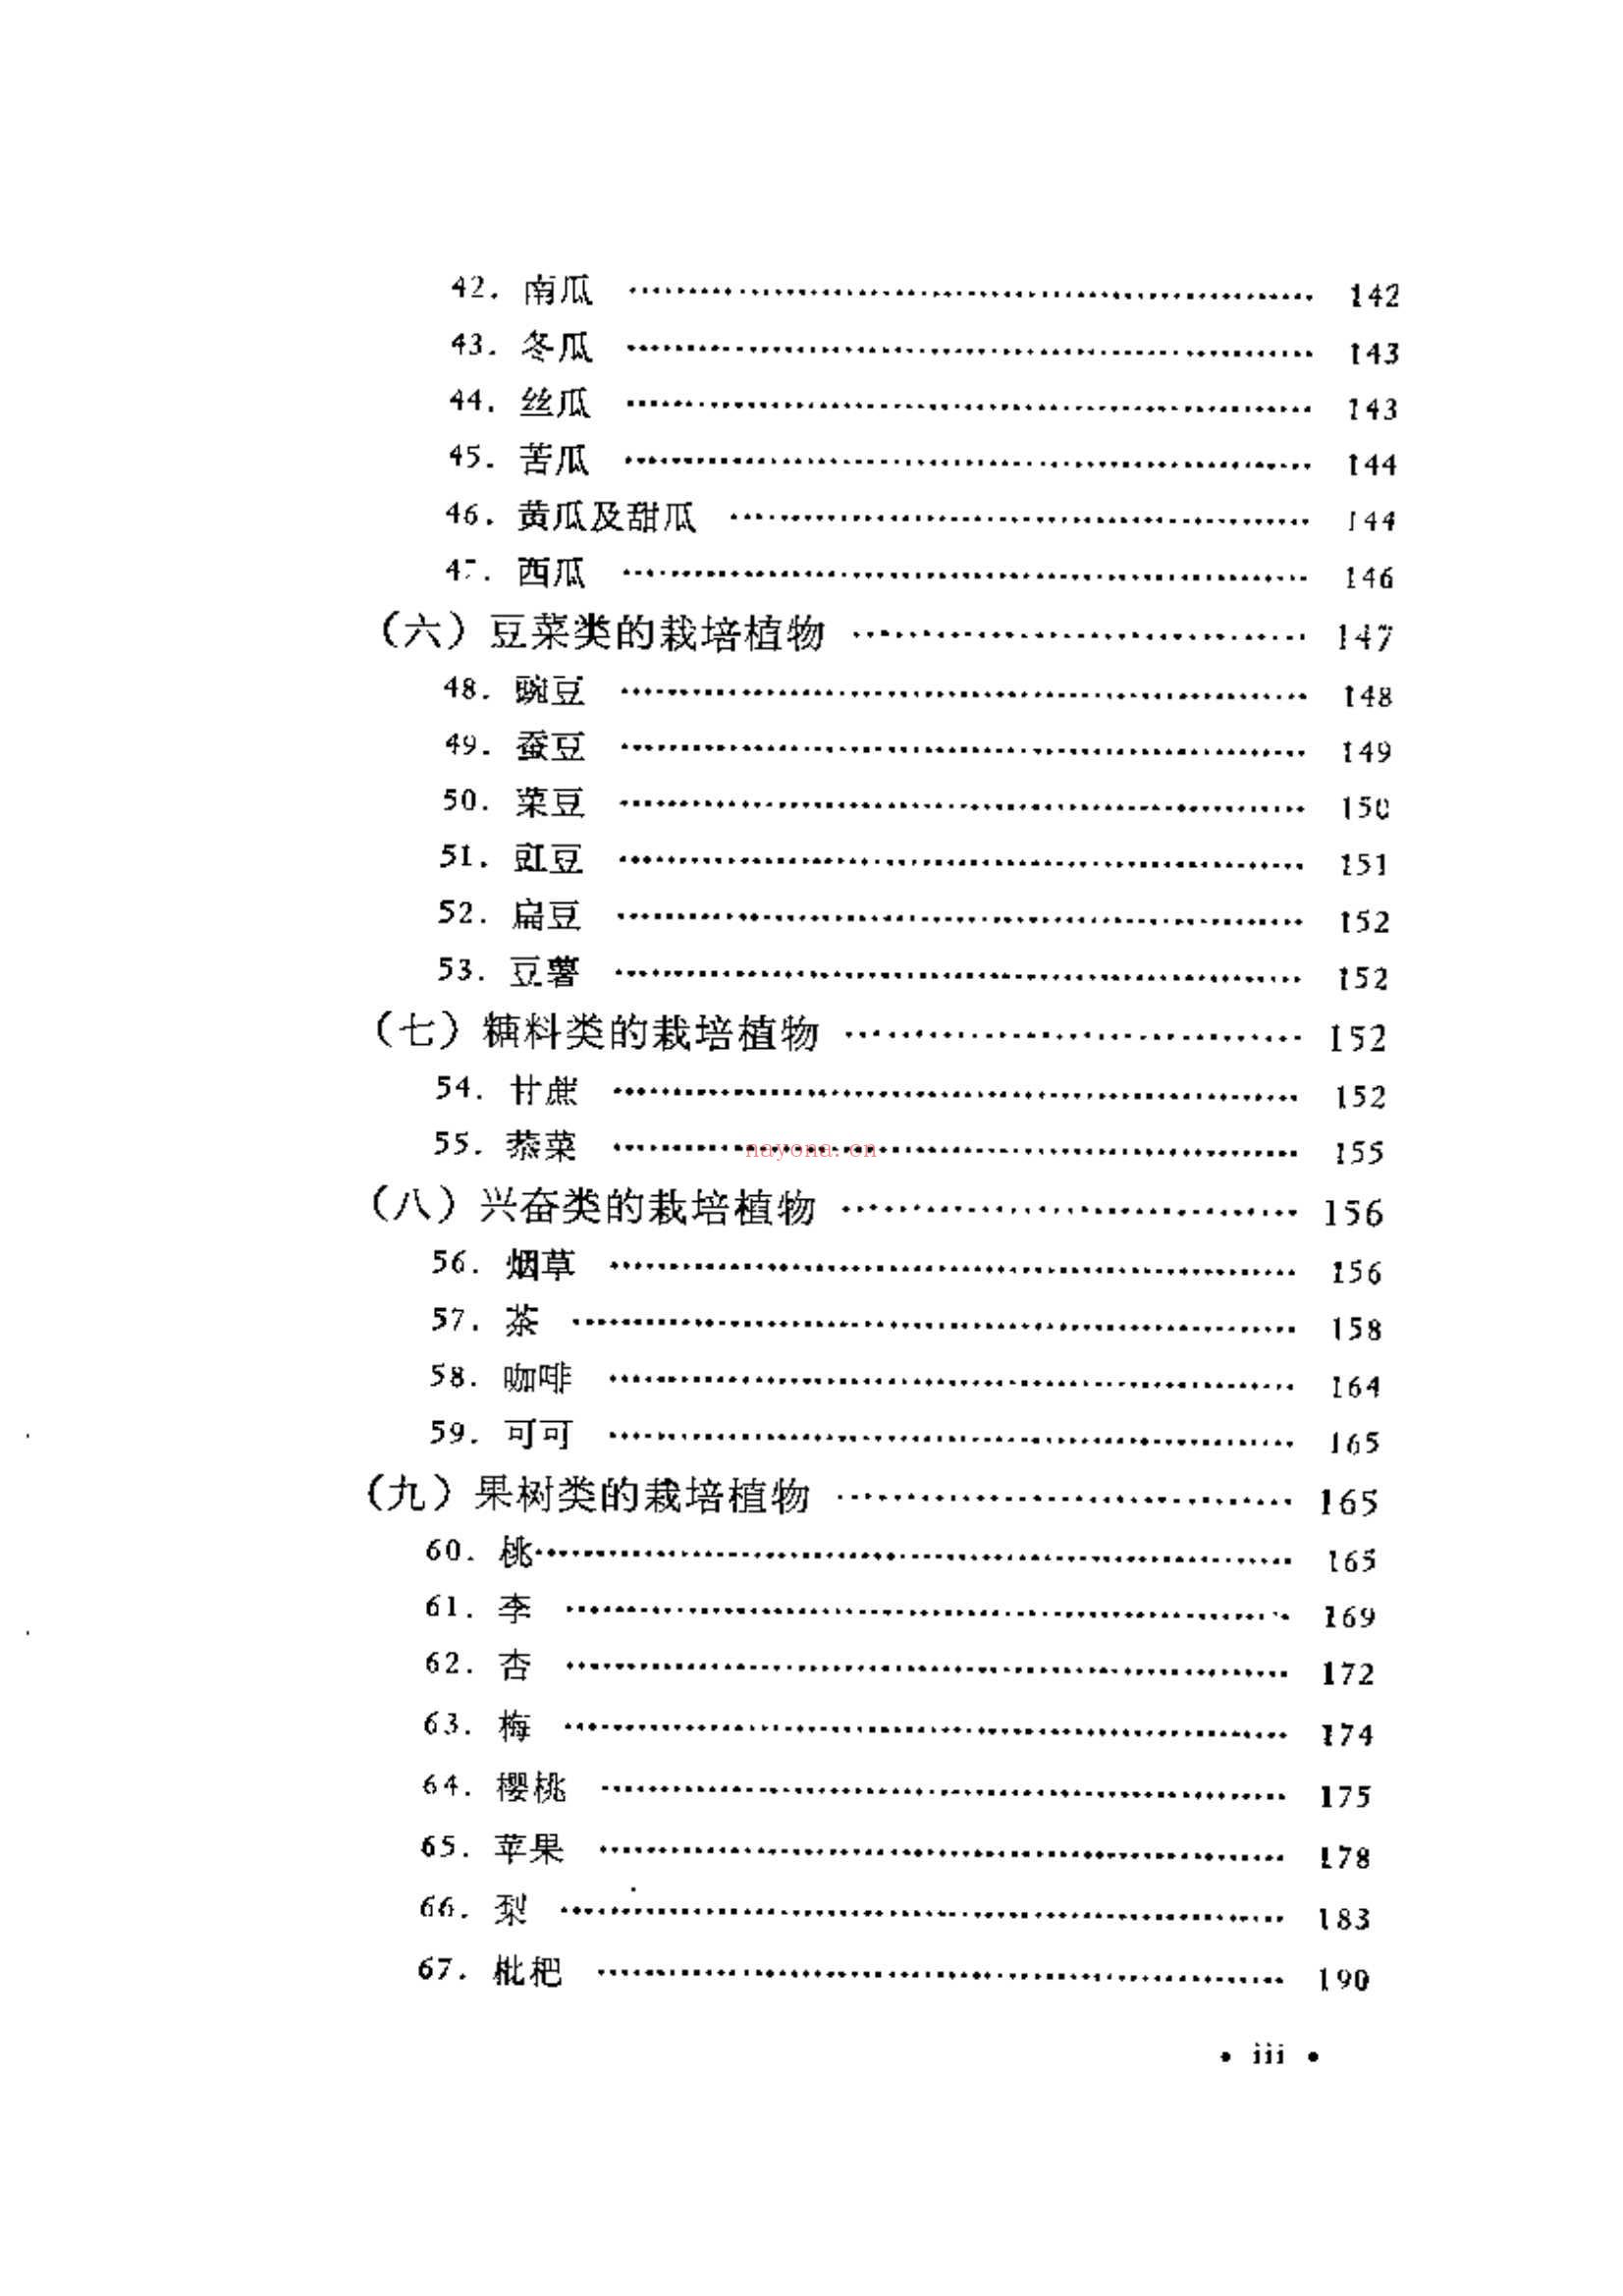 中国栽培植物发展史 电子书 (中国栽培植物发展史百度百科)